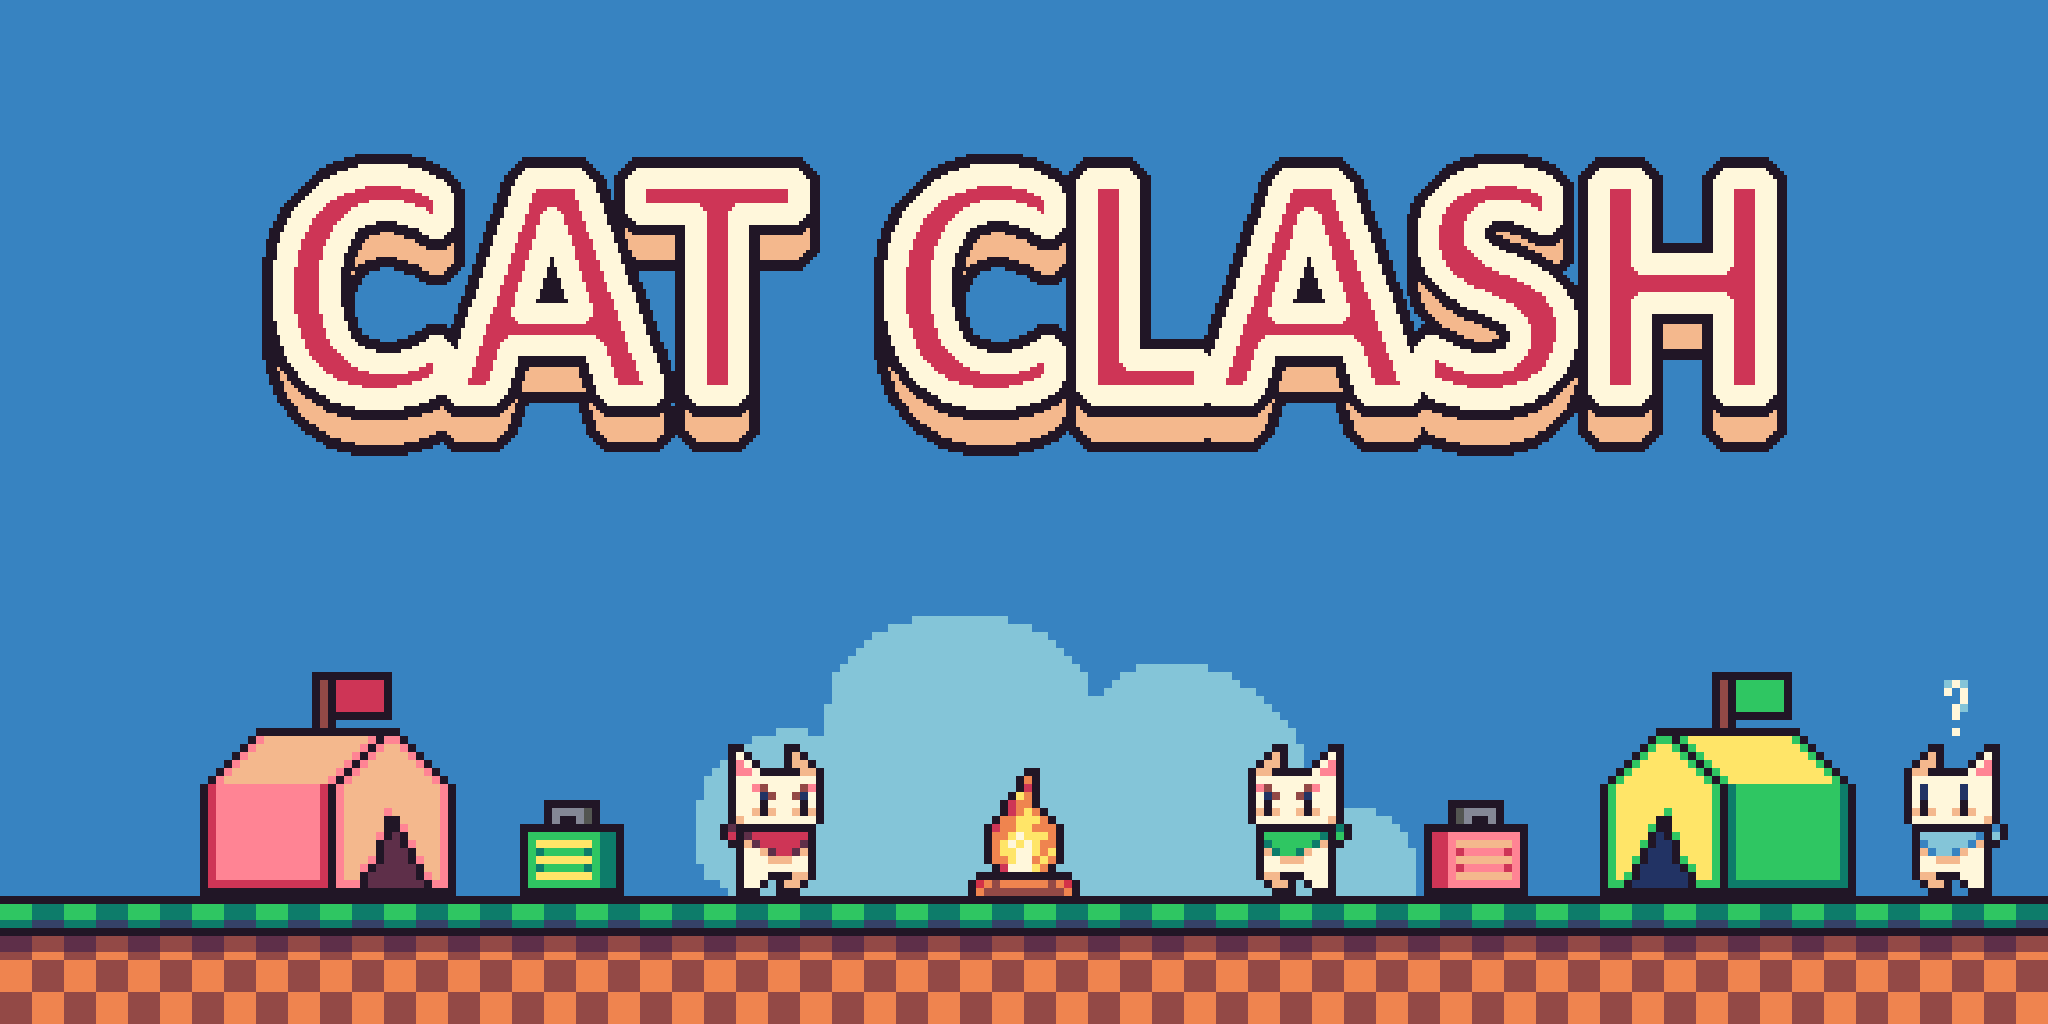 Cat Clash